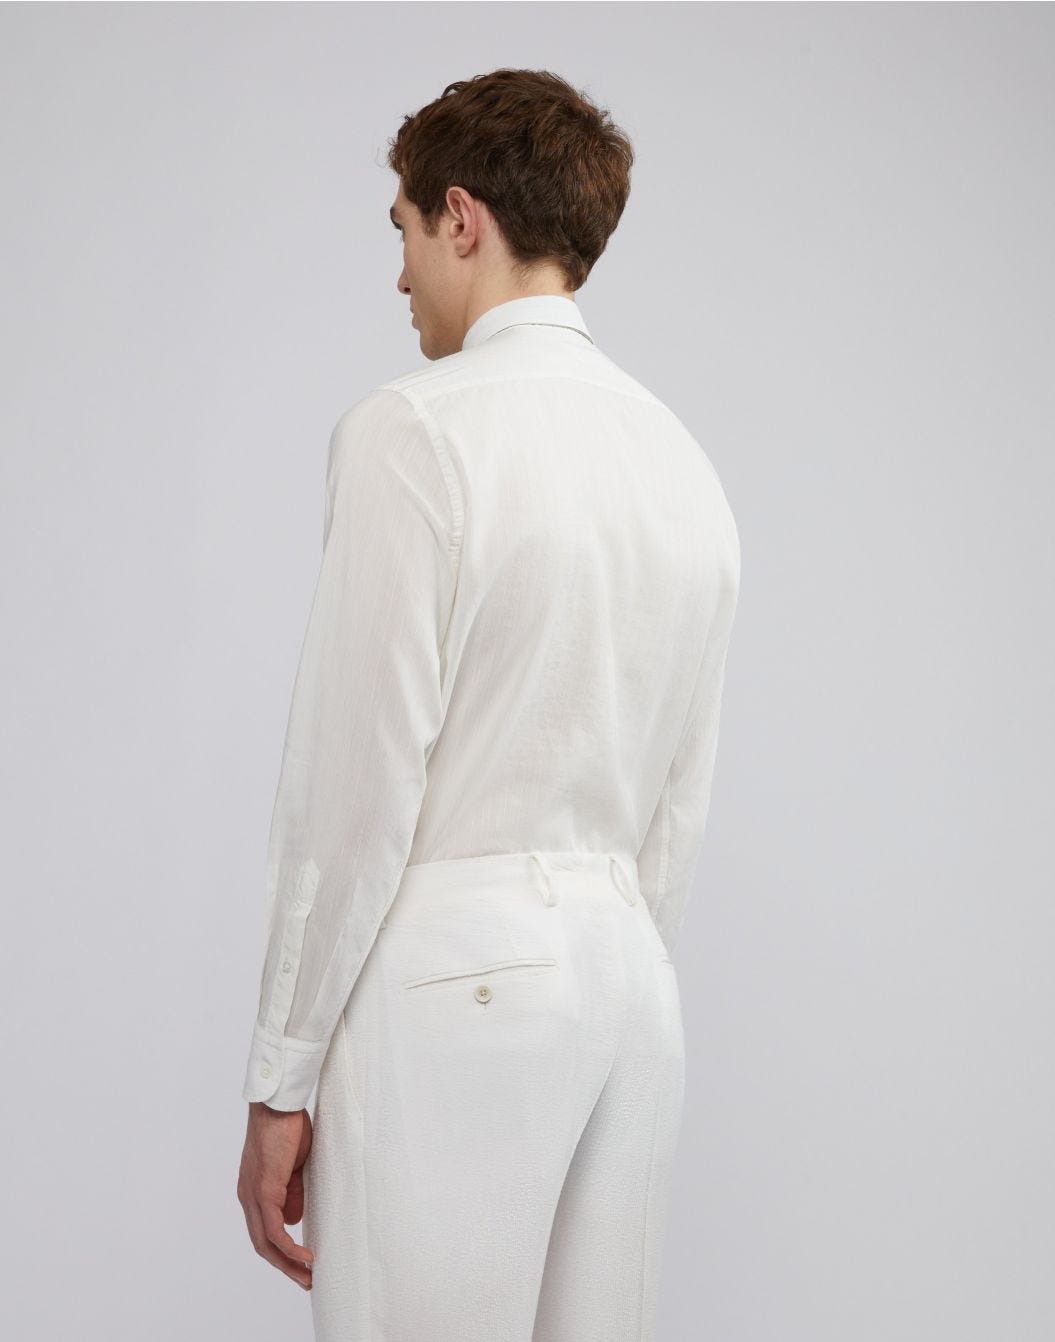 Camicia bianca con collo italiano in voile